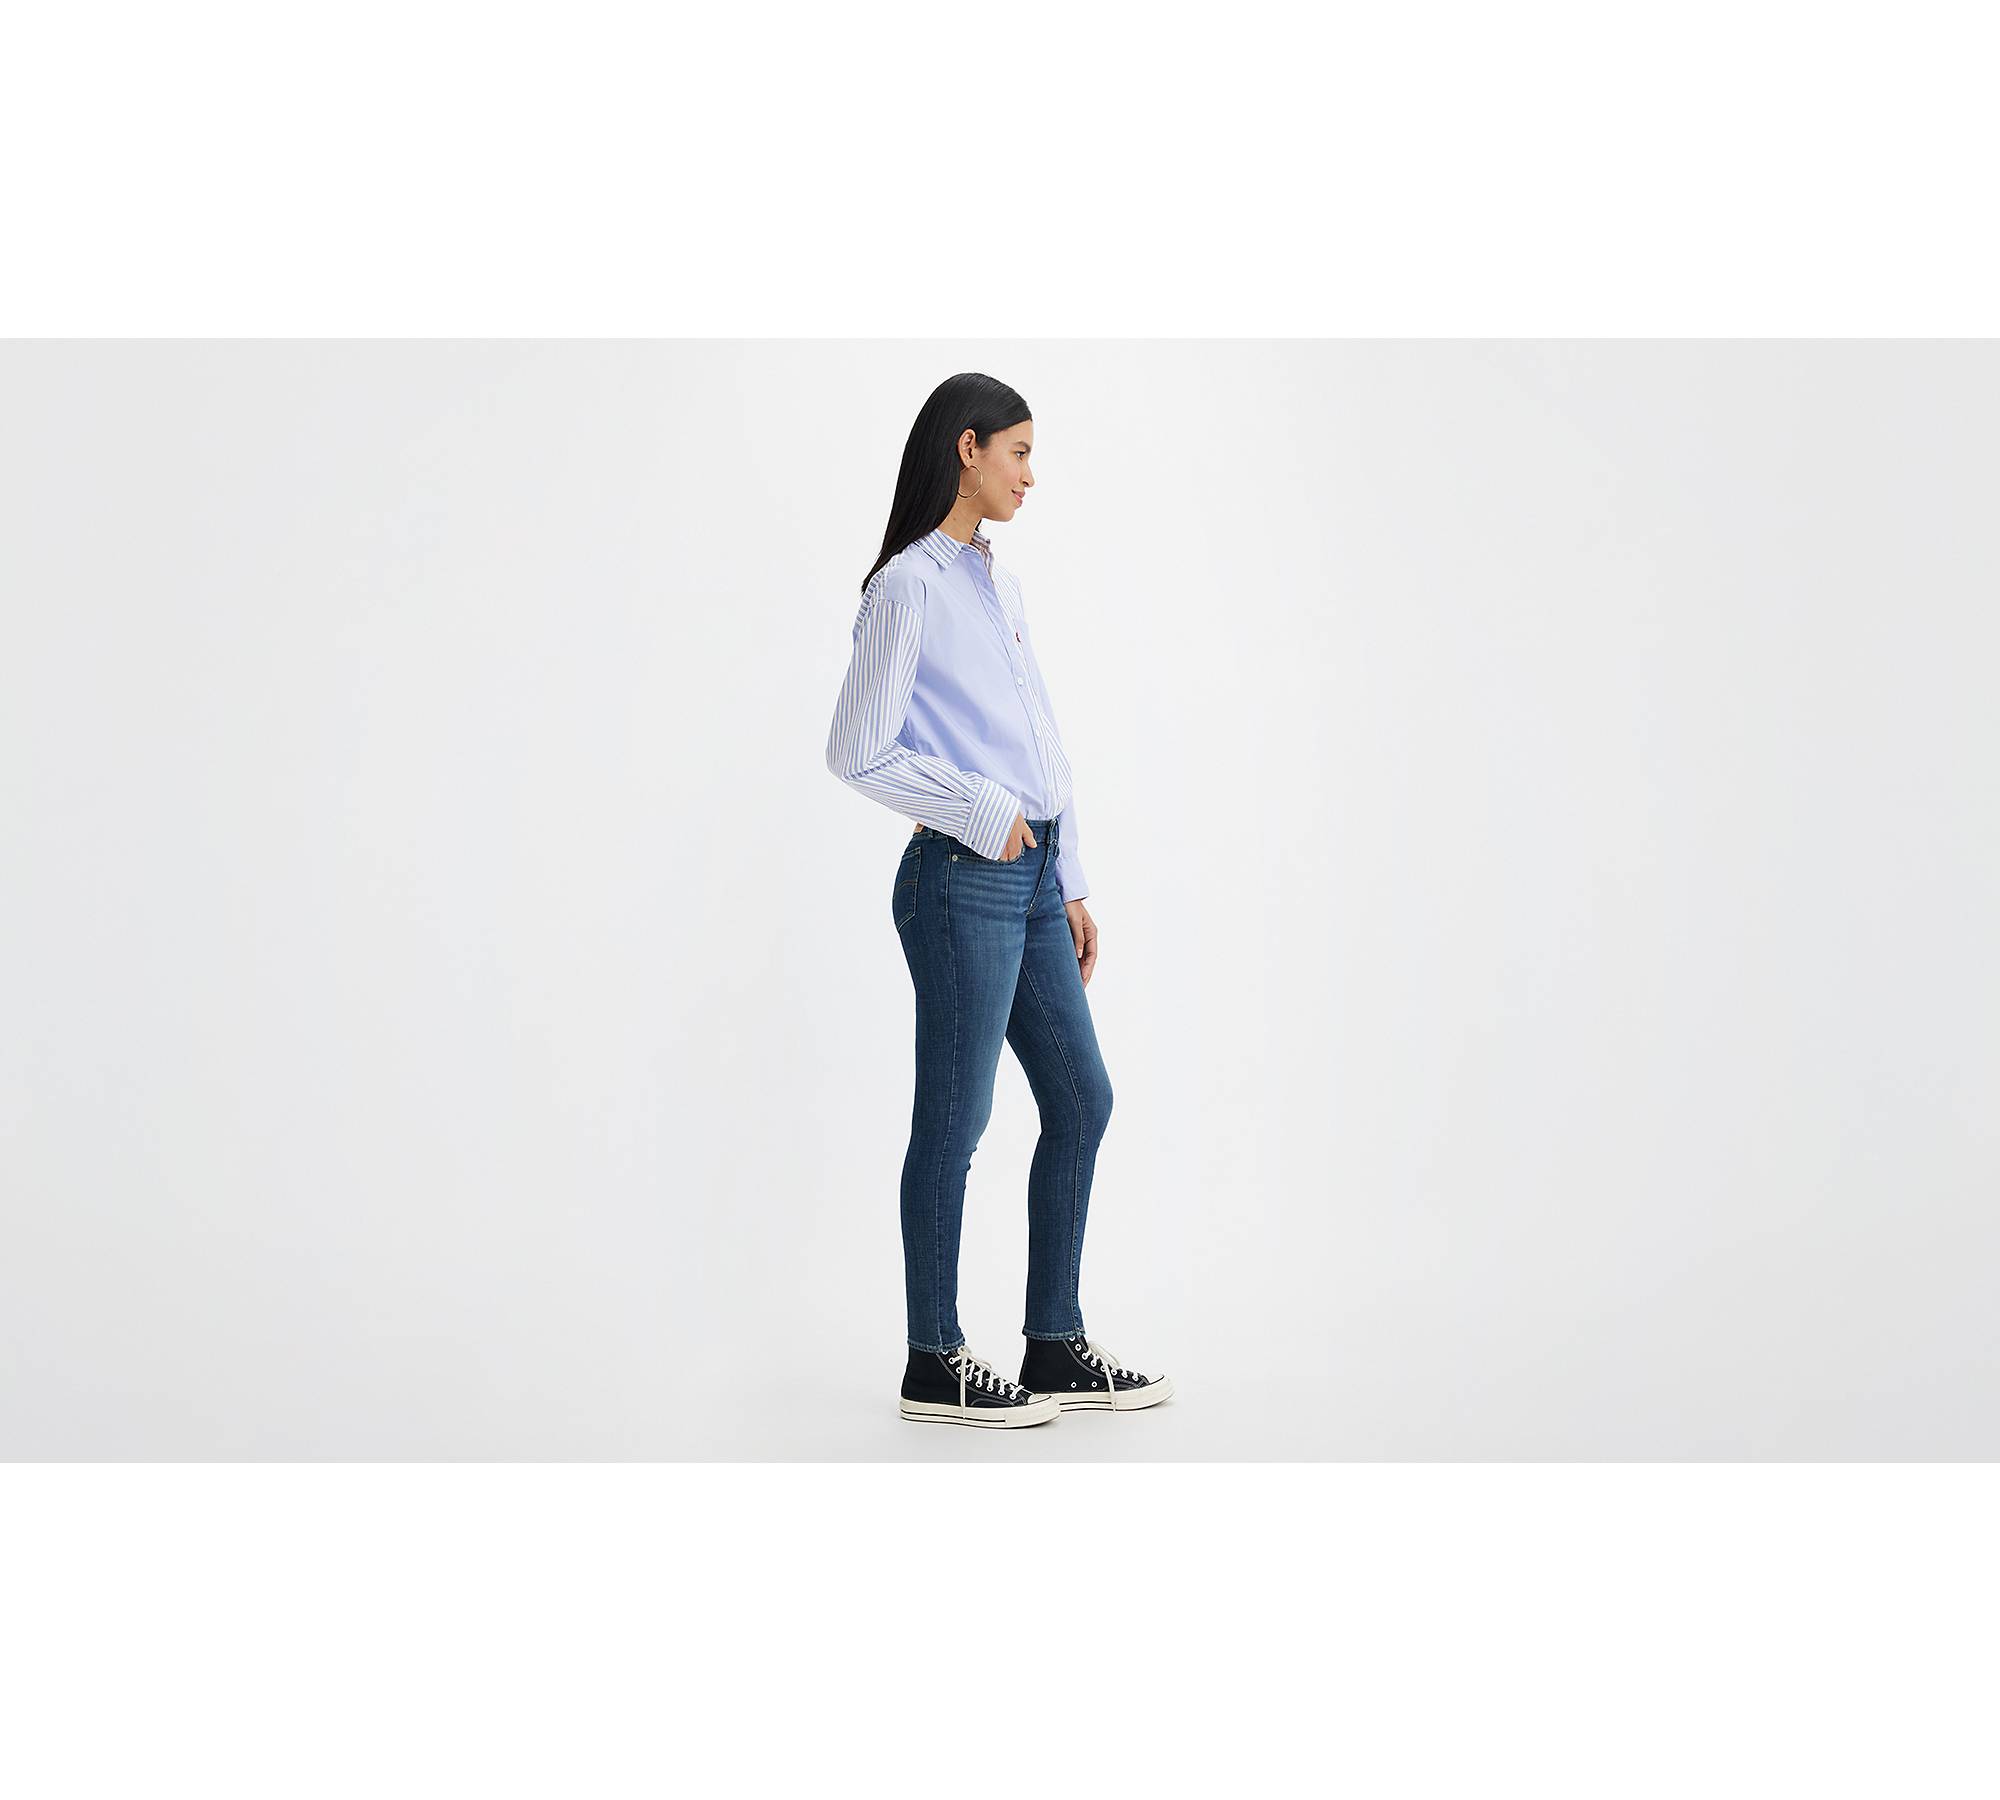 Calça jeans feminina skinny 711 da Levi's, índigo Ridge, 28 (EUA 6